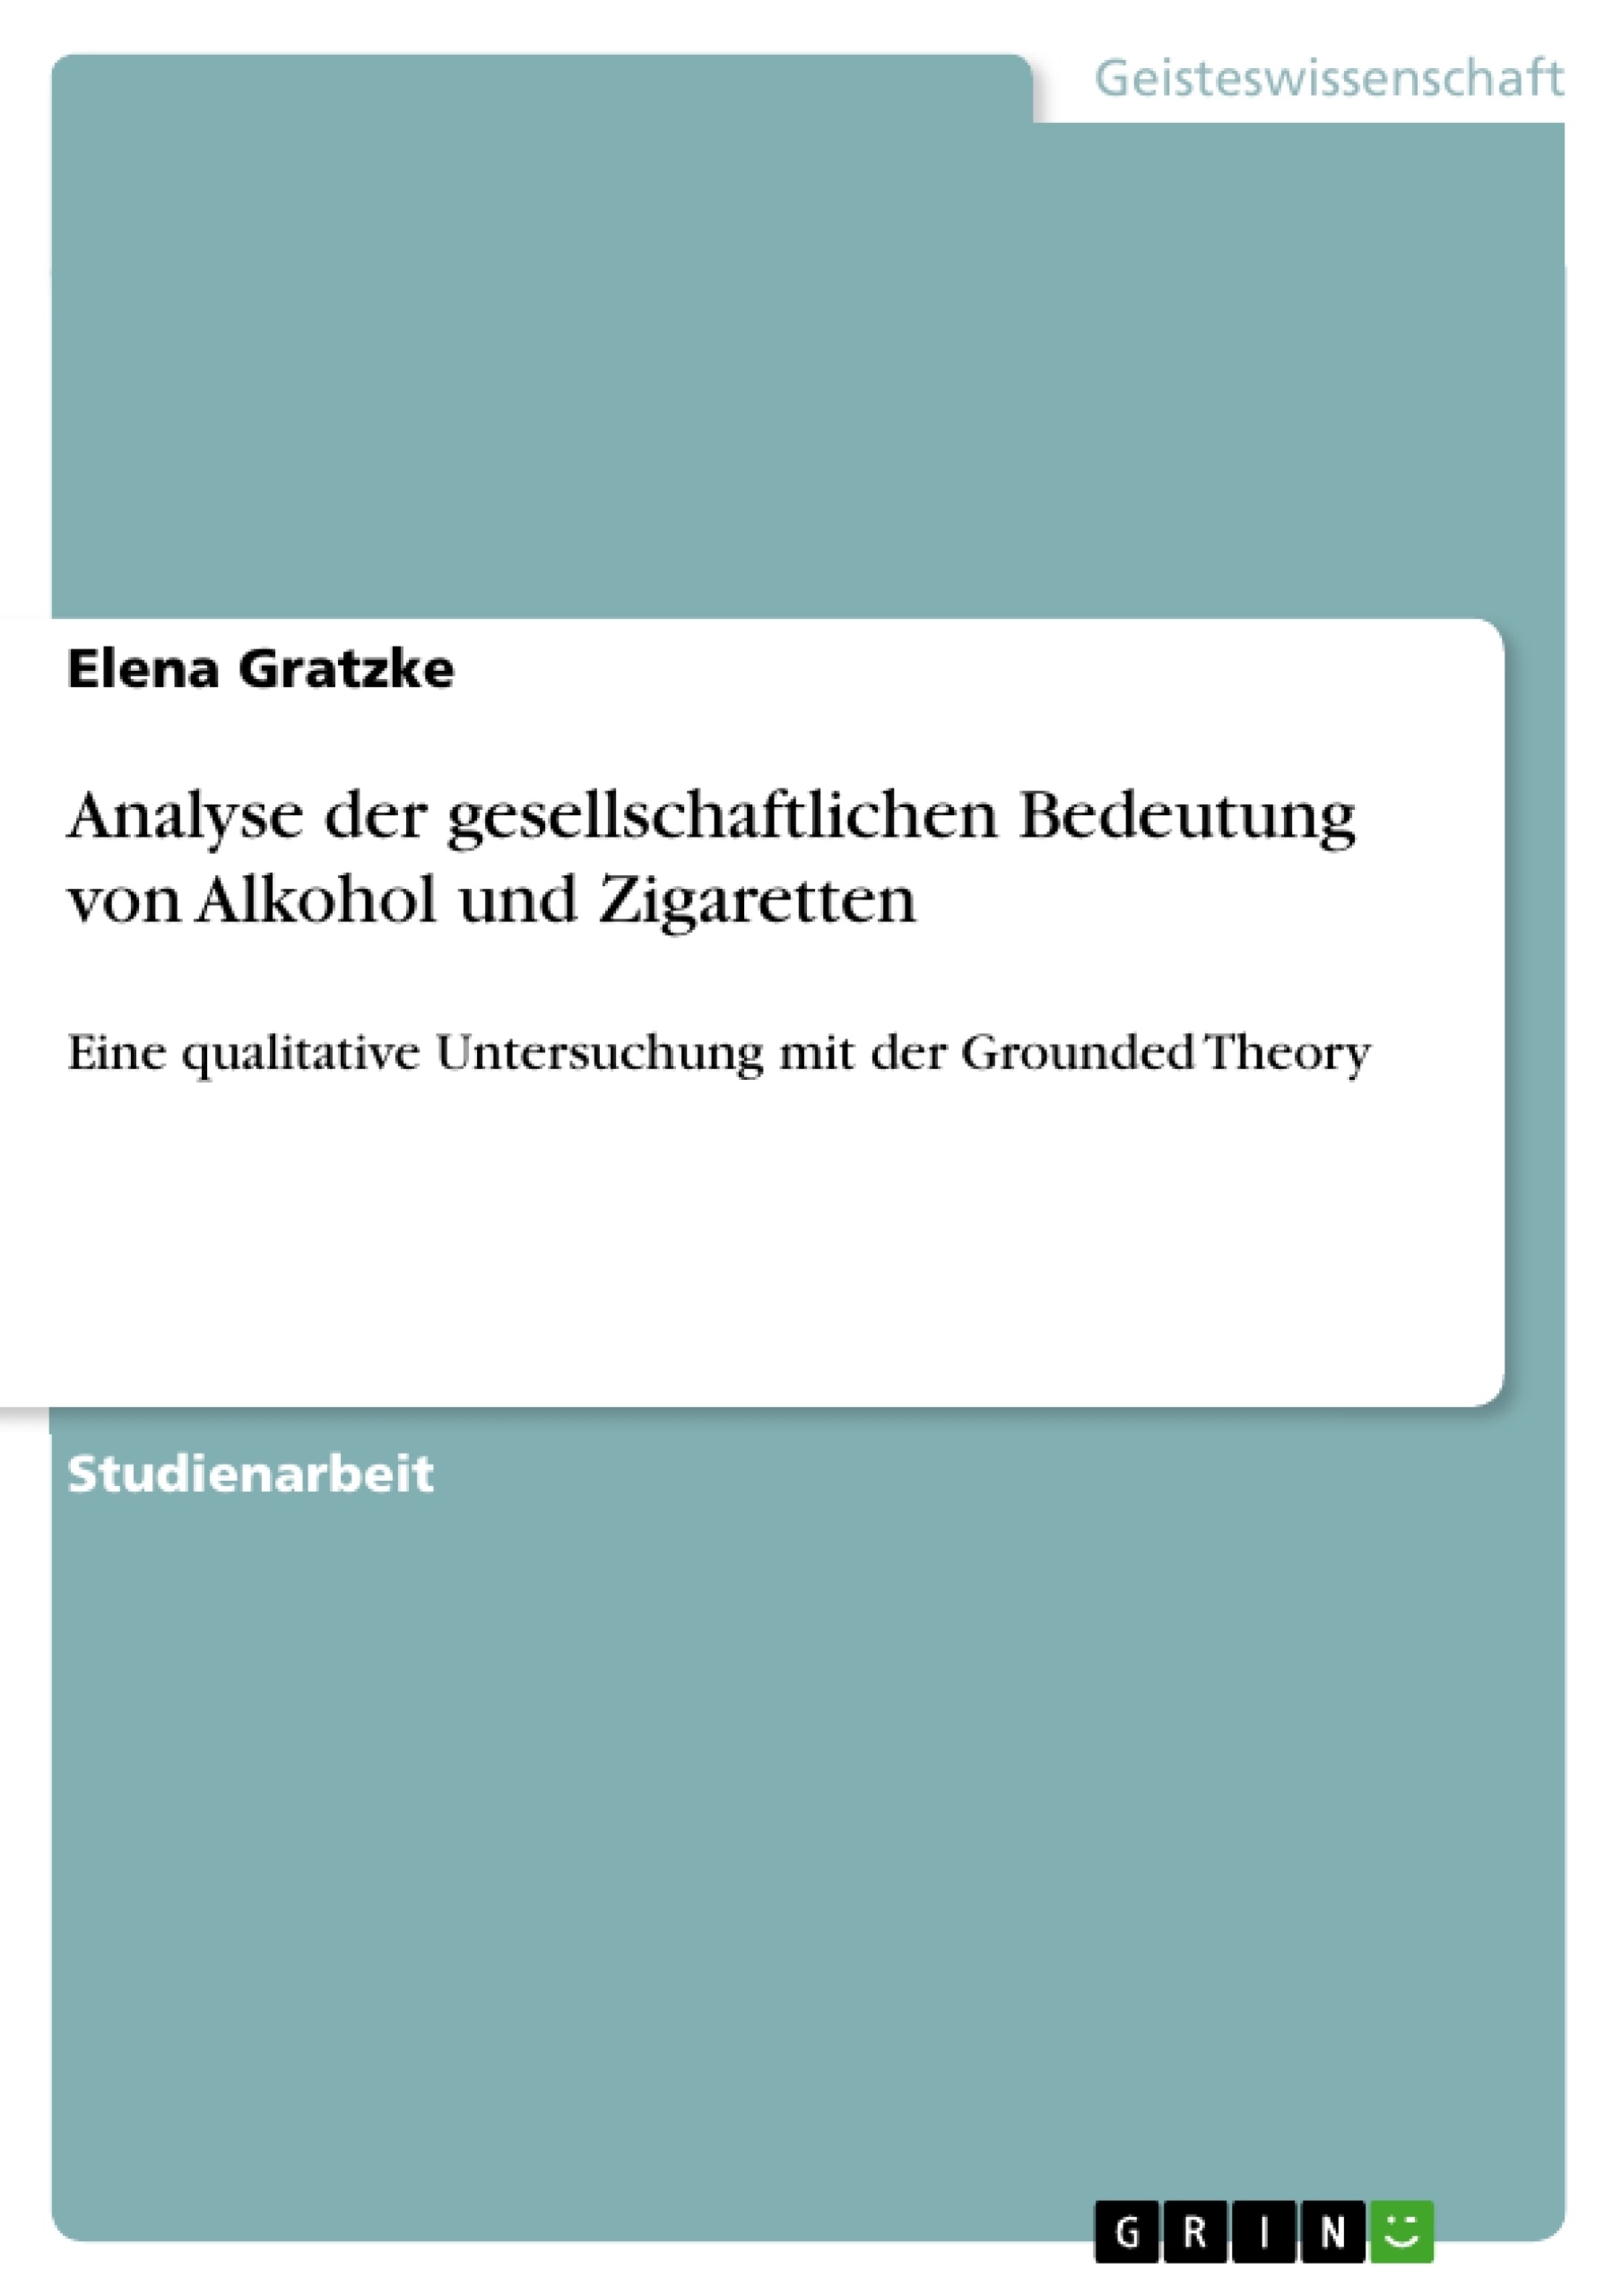 Título: Analyse der gesellschaftlichen Bedeutung von Alkohol und Zigaretten